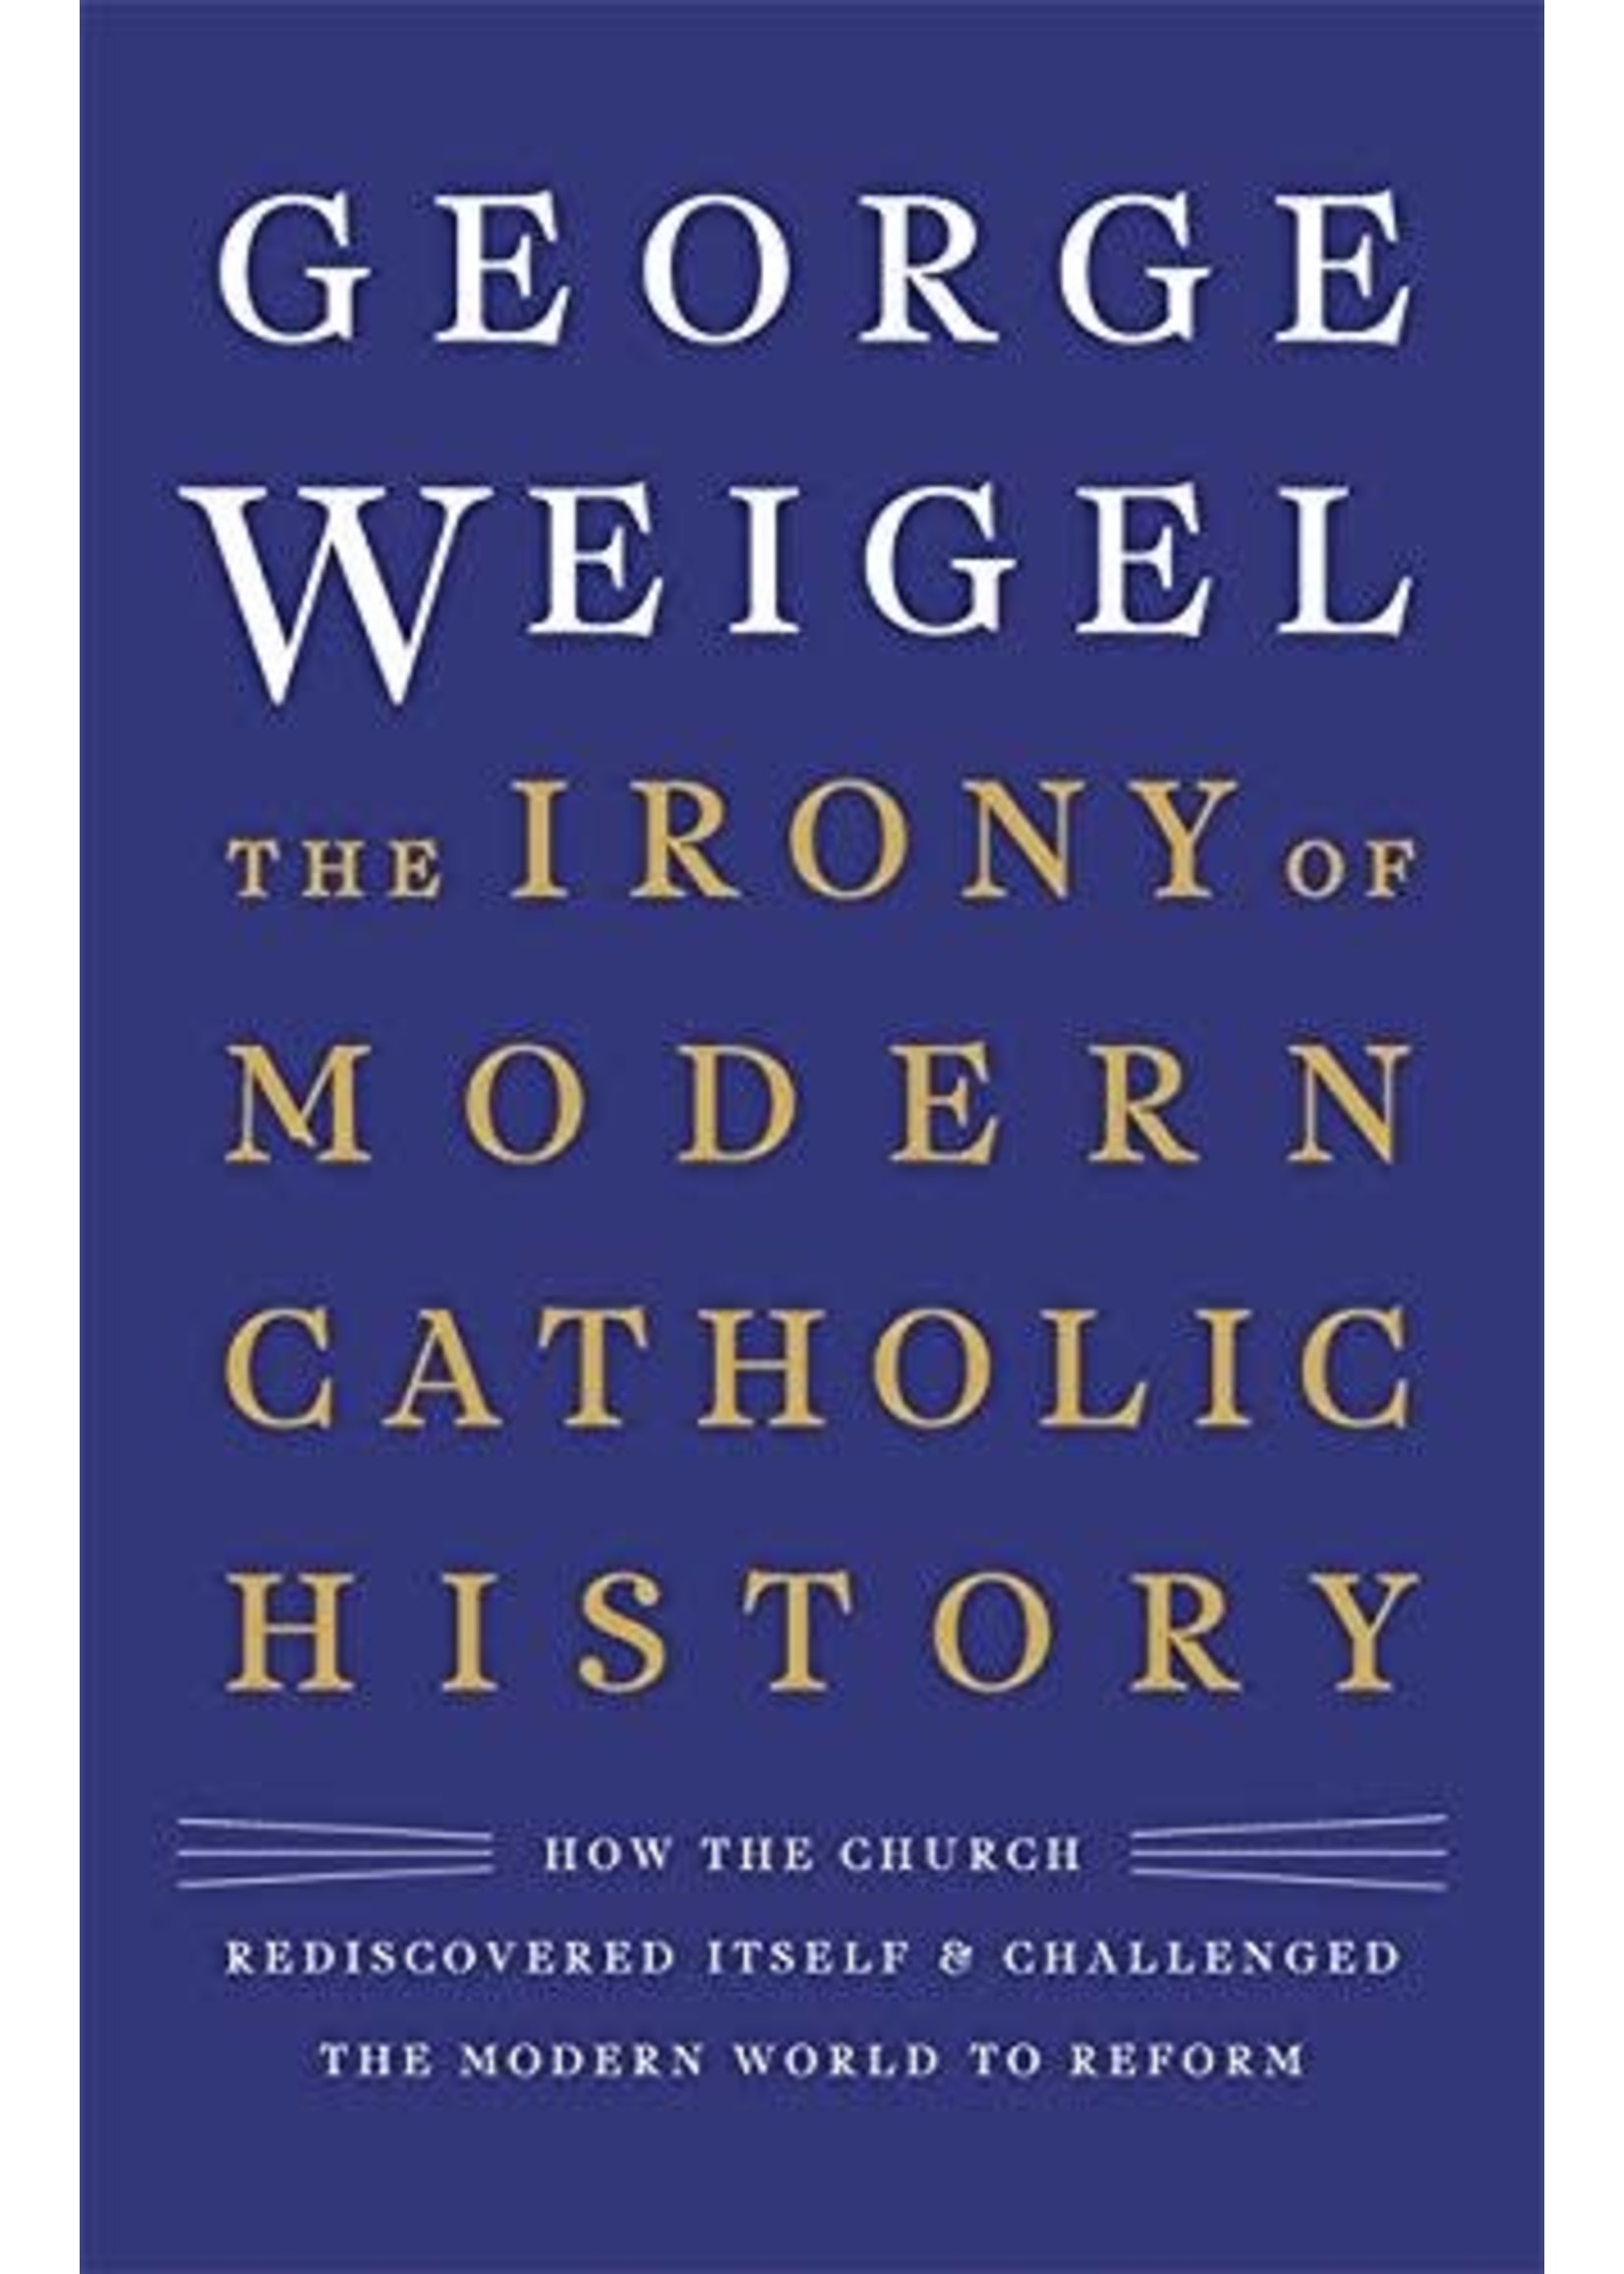 The Irony of Modern Catholic History